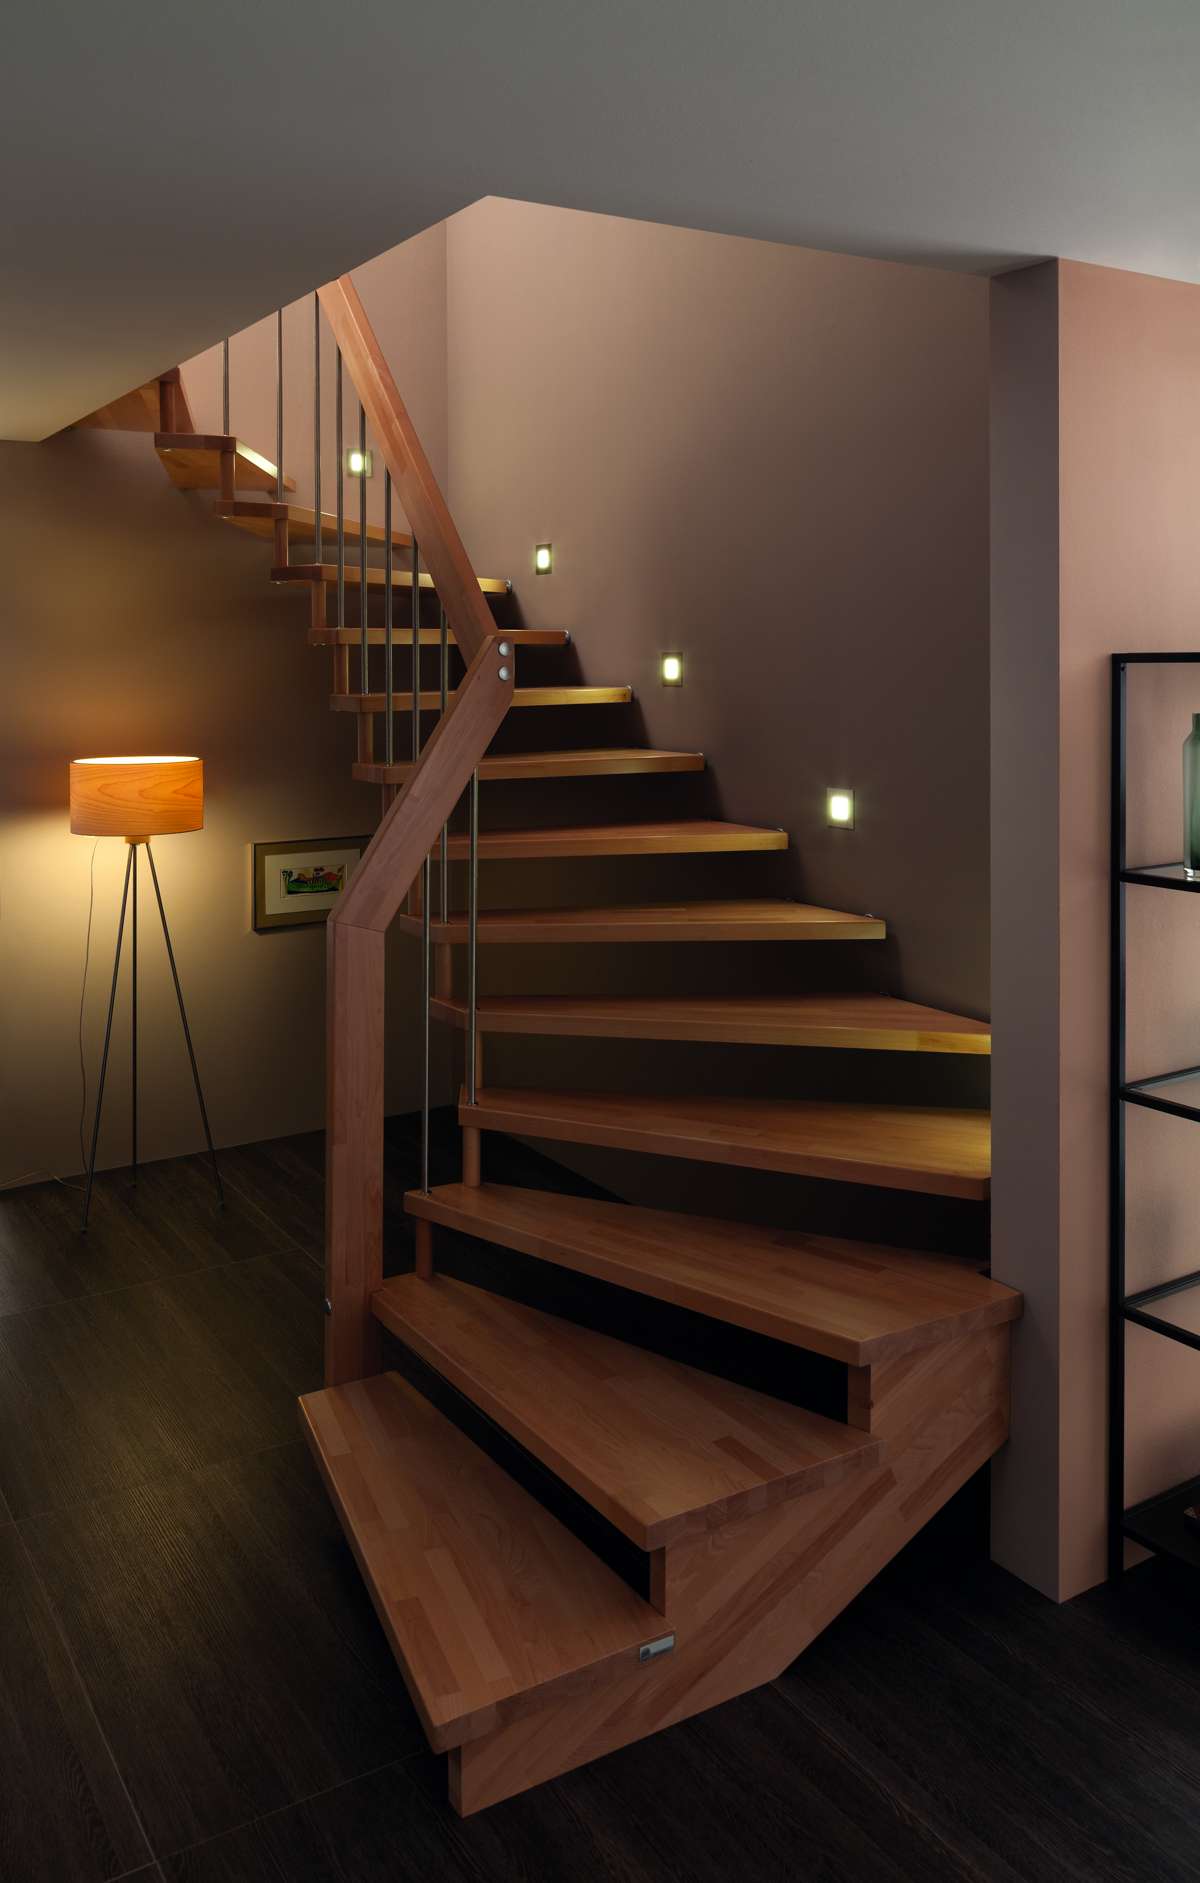 Lichtquellen an Treppen sorgen für stimmungsvolle Akzente.